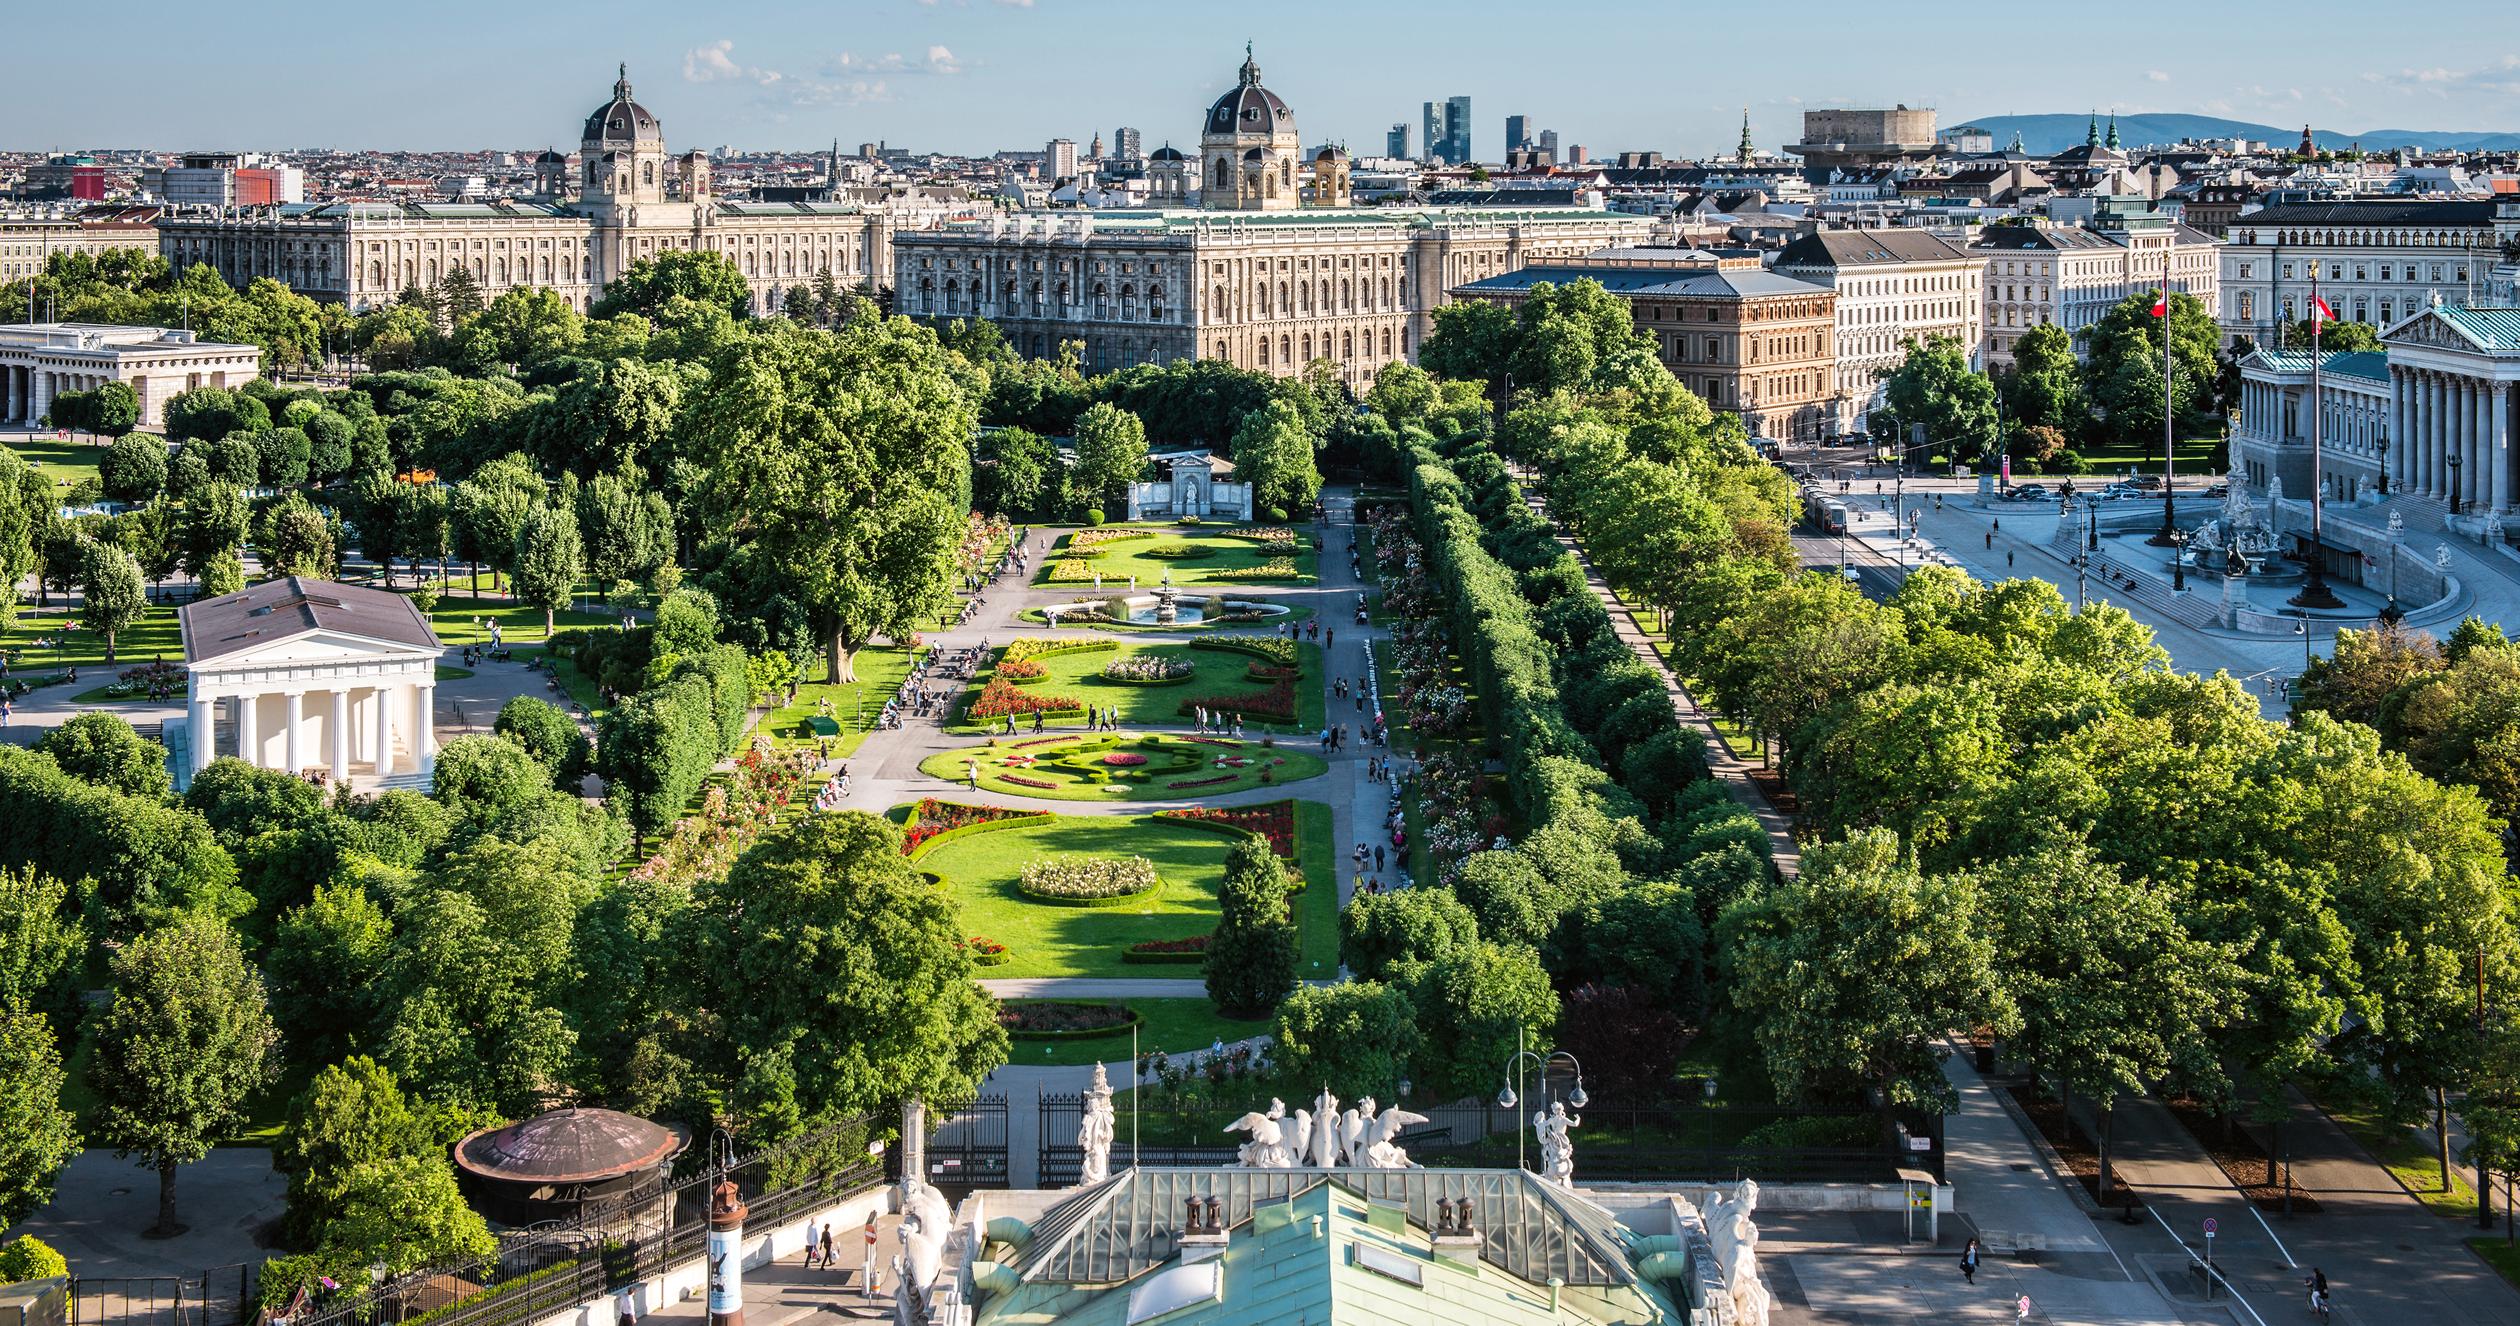 Vienne détrône Melbourne dans le classement des villes les plus agréables à vivre